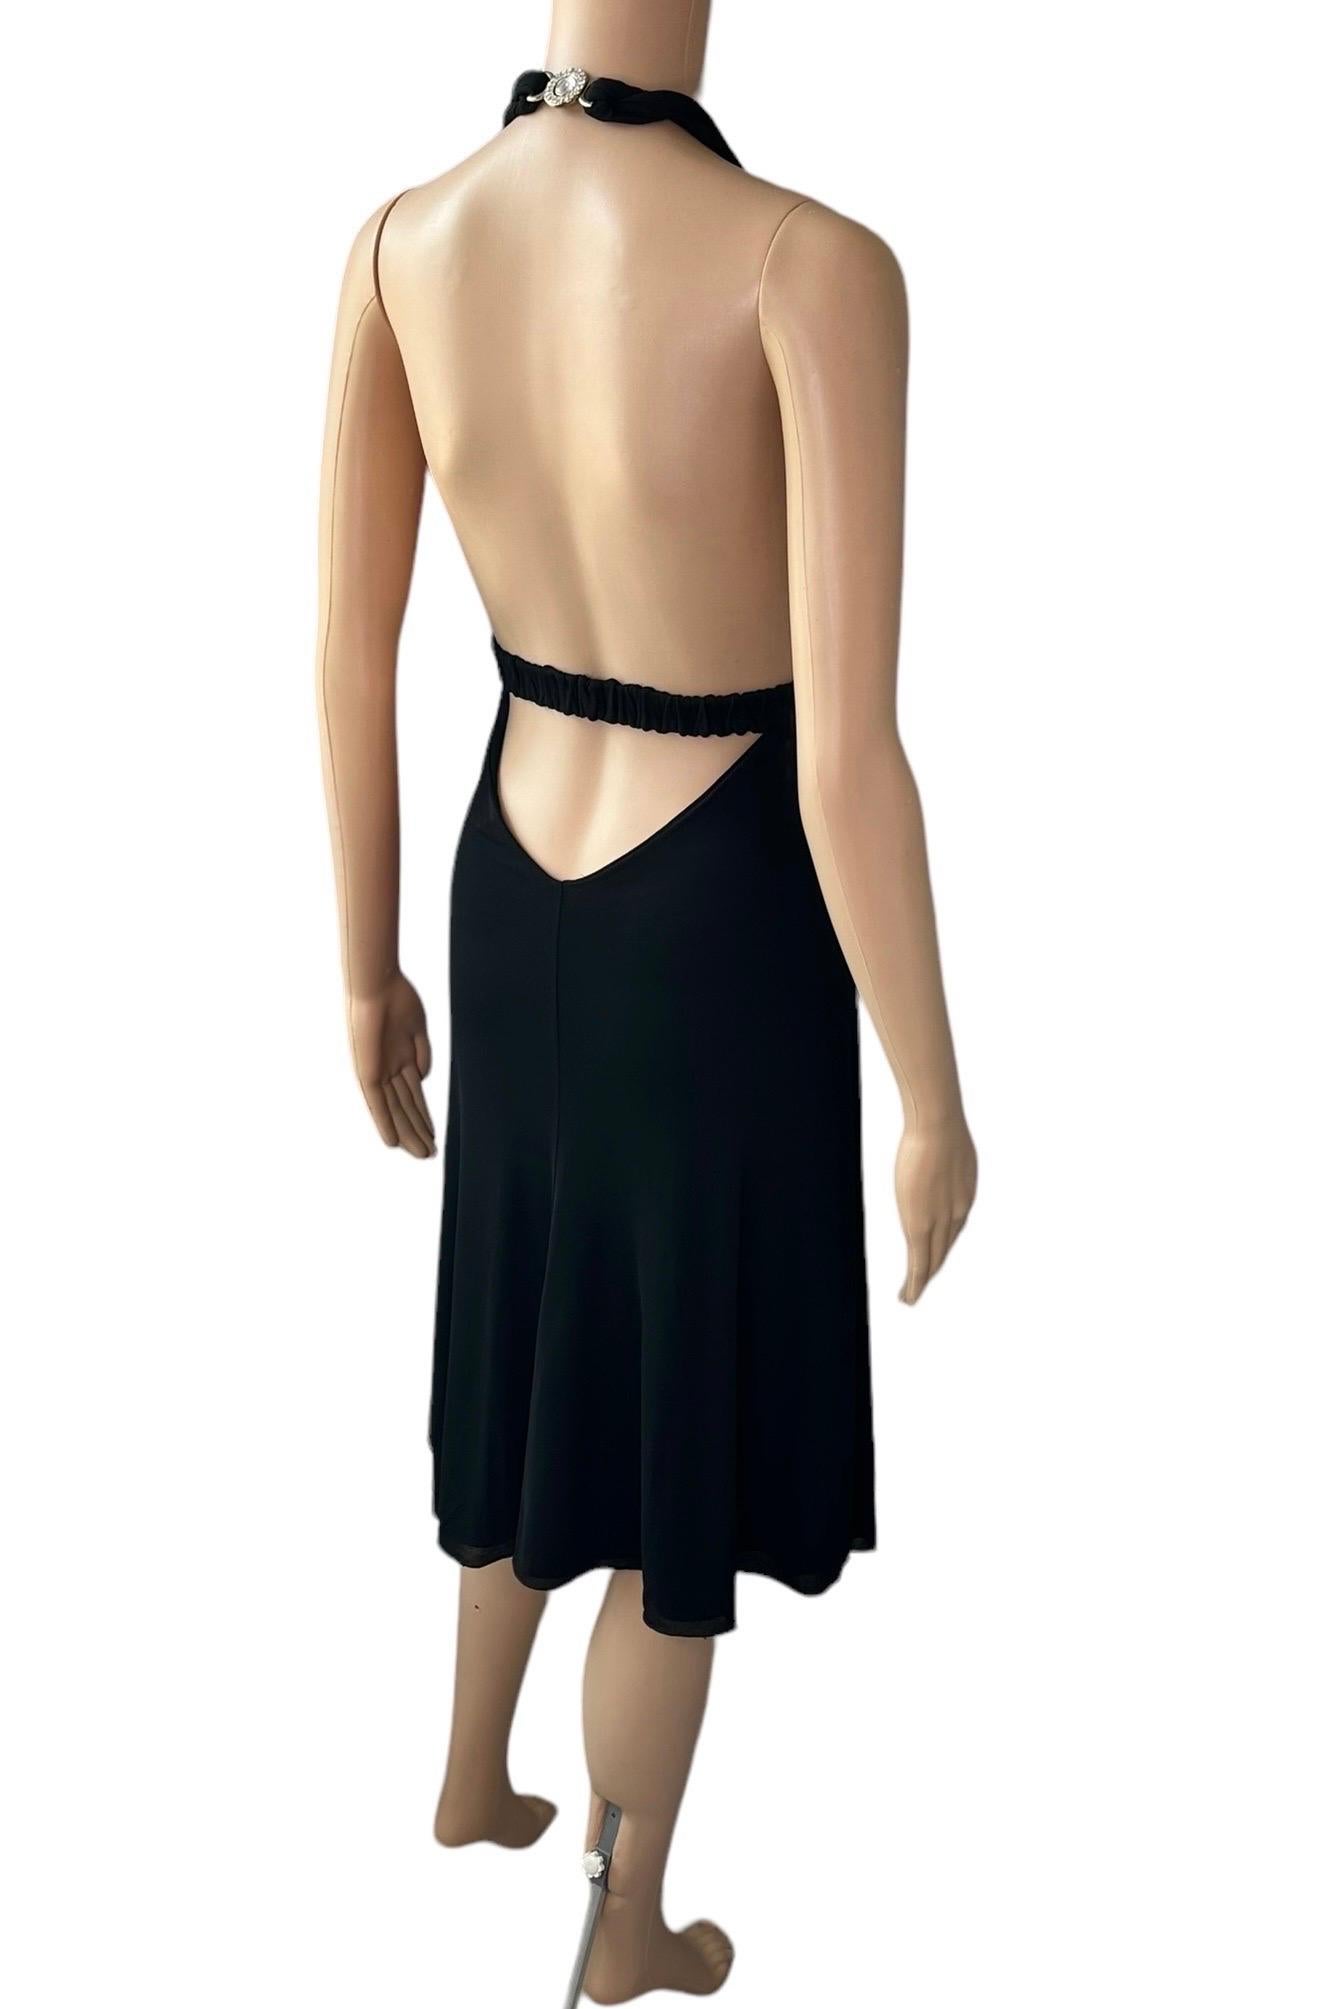 Versace S/S 2007 Crystal Logo Plunging Neckline Backless Halter Black Dress For Sale 11